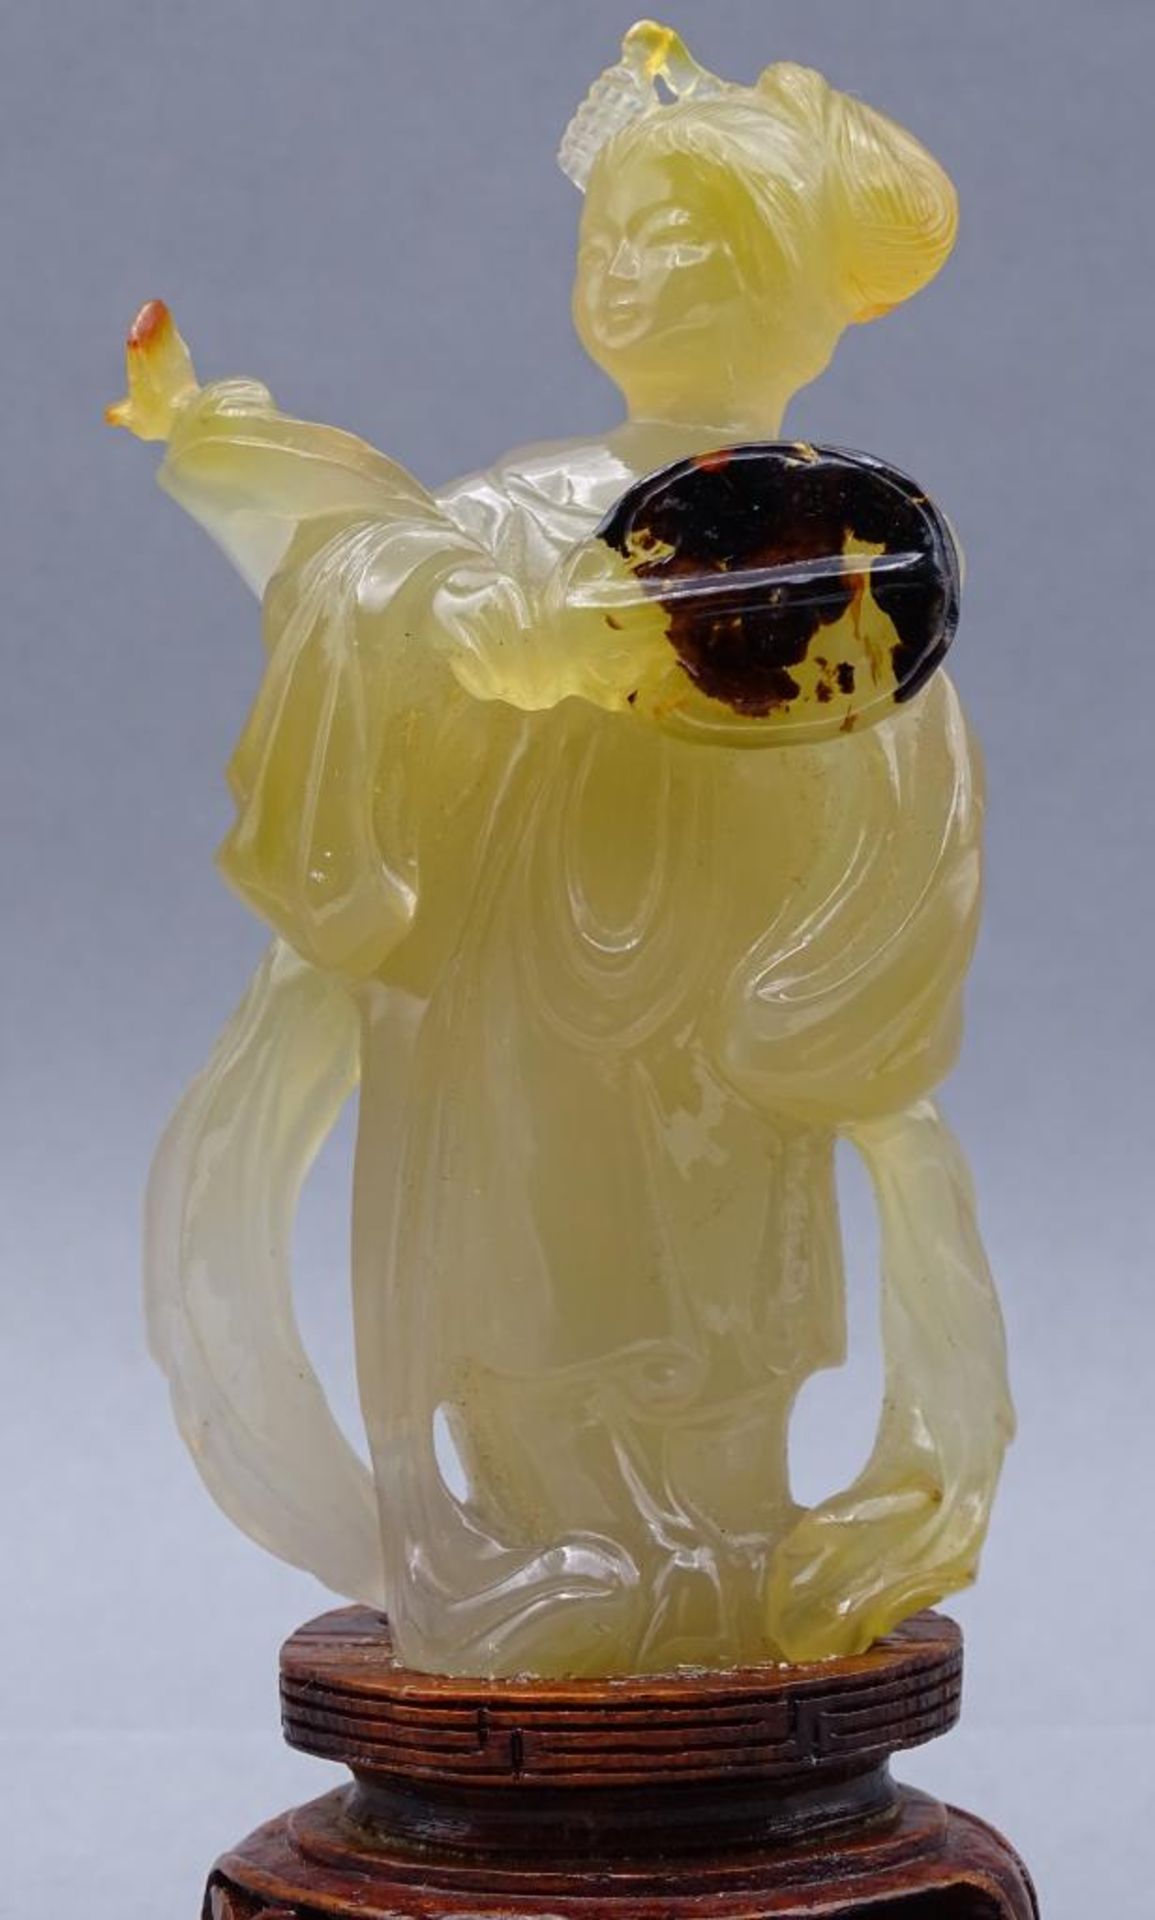 gelbe Jadeschnitzerei, Chinesin mit Fächer auf Holzsockel, China, 18/19. Jhd?, H-ca. 14 cm, rechte - Bild 3 aus 10